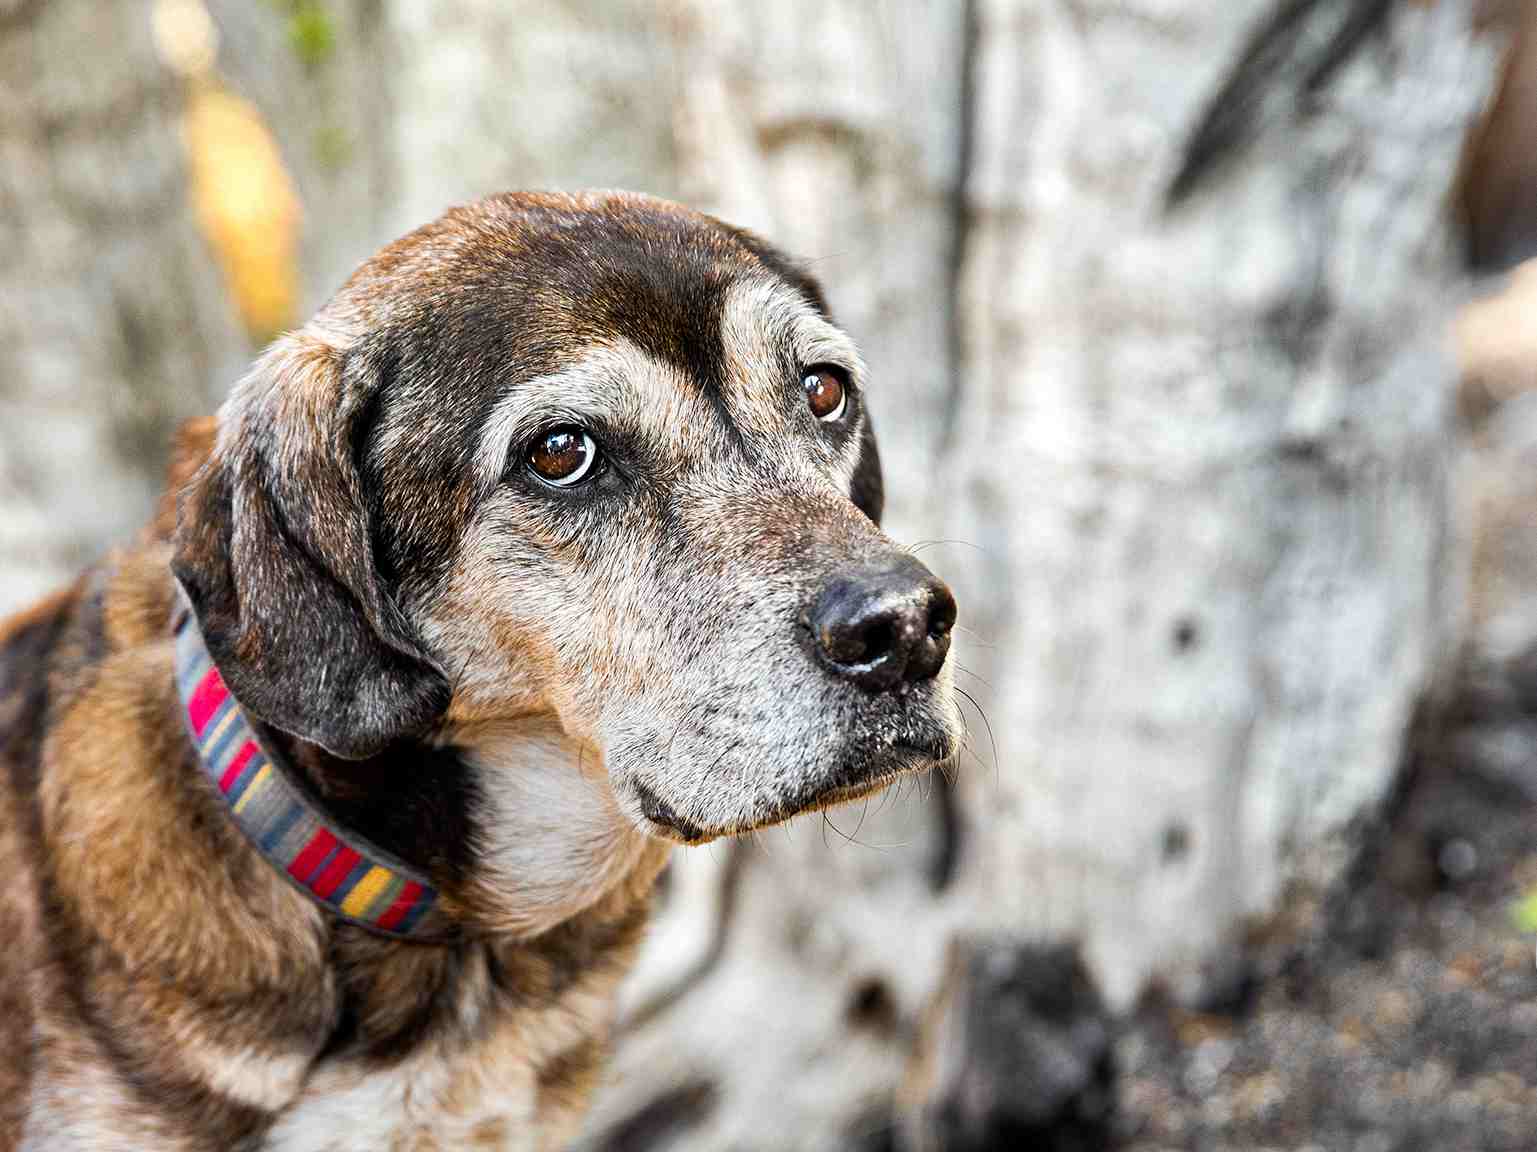 A close-up portrait of a senior dog